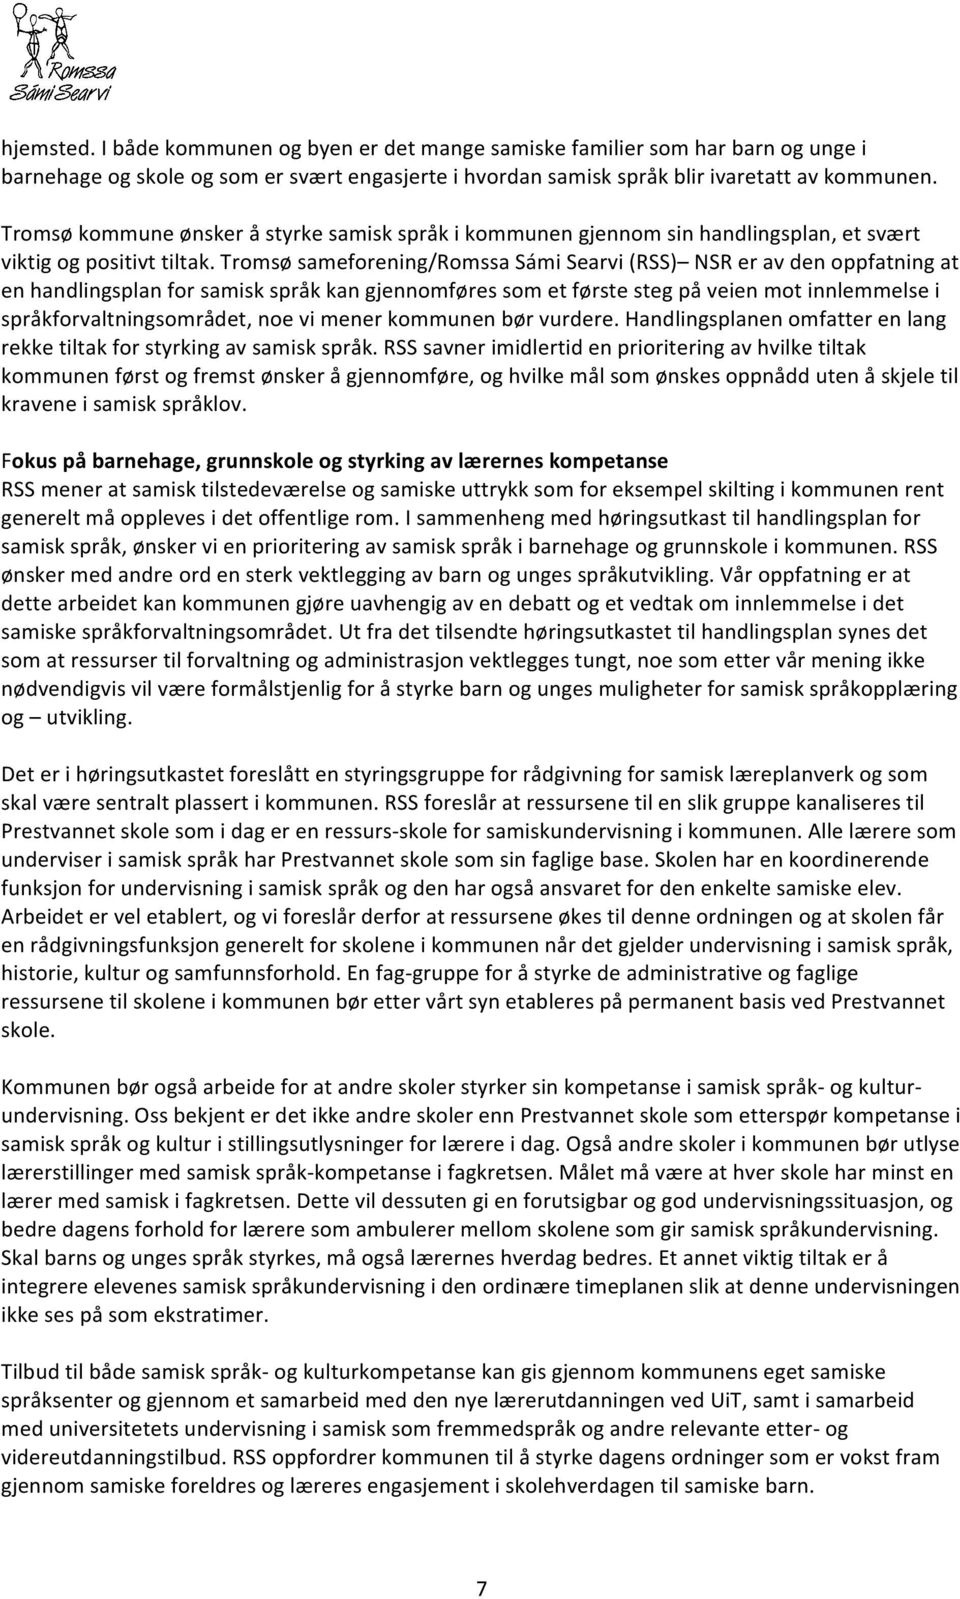 Tromsø sameforening/romssa Sámi Searvi (RSS) NSR er av den oppfatning at en handlingsplan for samisk språk kan gjennomføres som et første steg på veien mot innlemmelse i språkforvaltningsområdet, noe